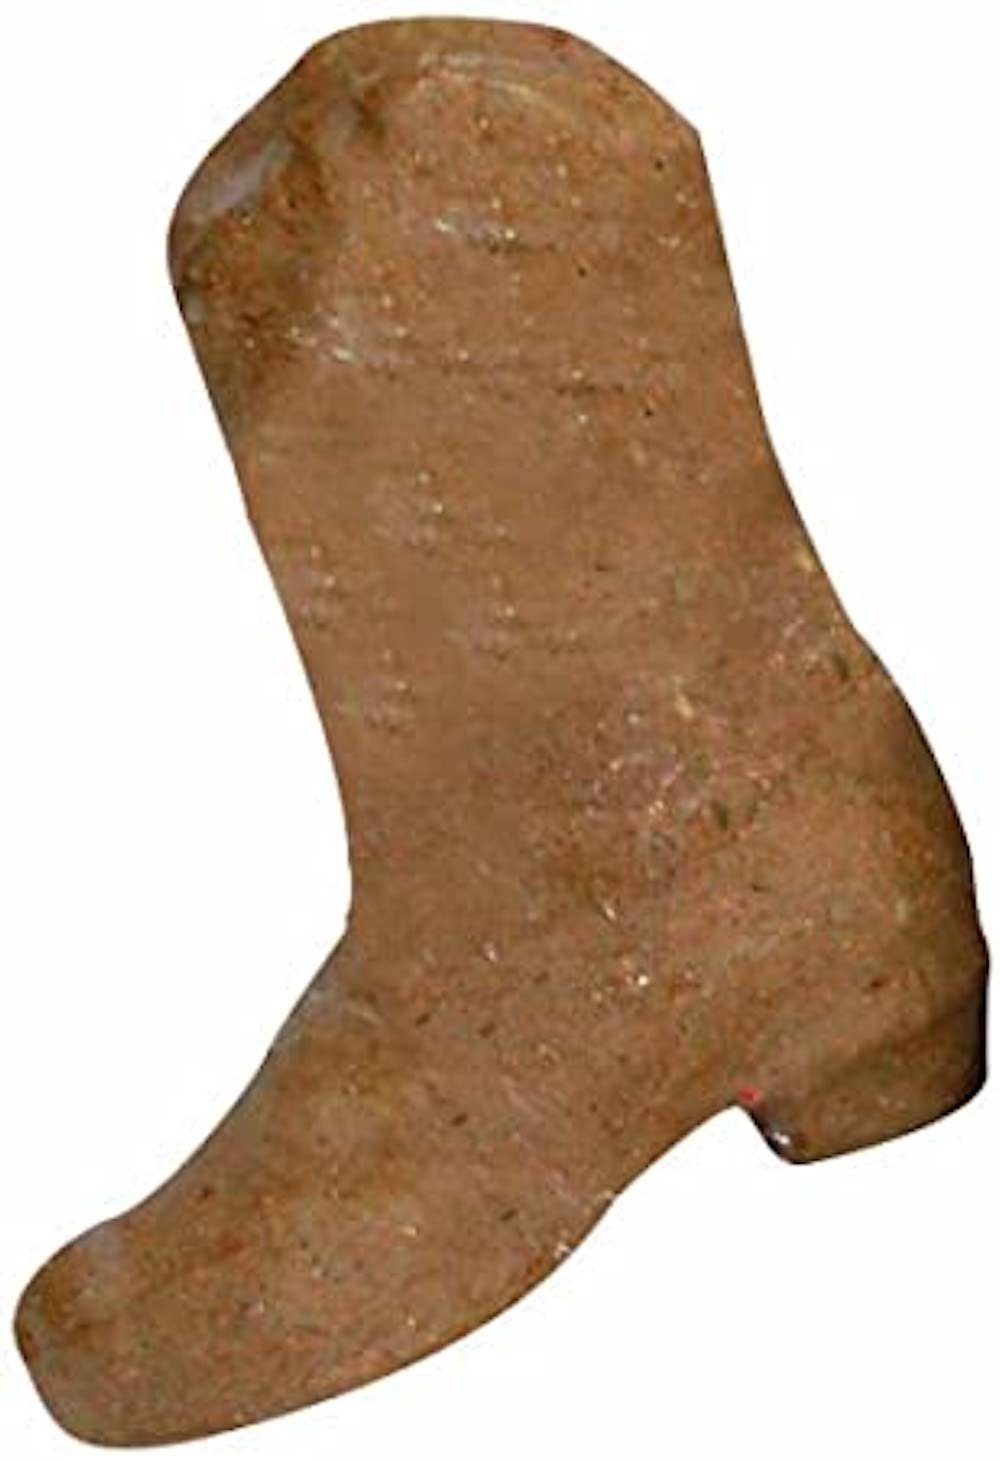 H-Erzmade Papiersterne Decopatch Stiefel aus Pappmaché, Braun, 2 Stück